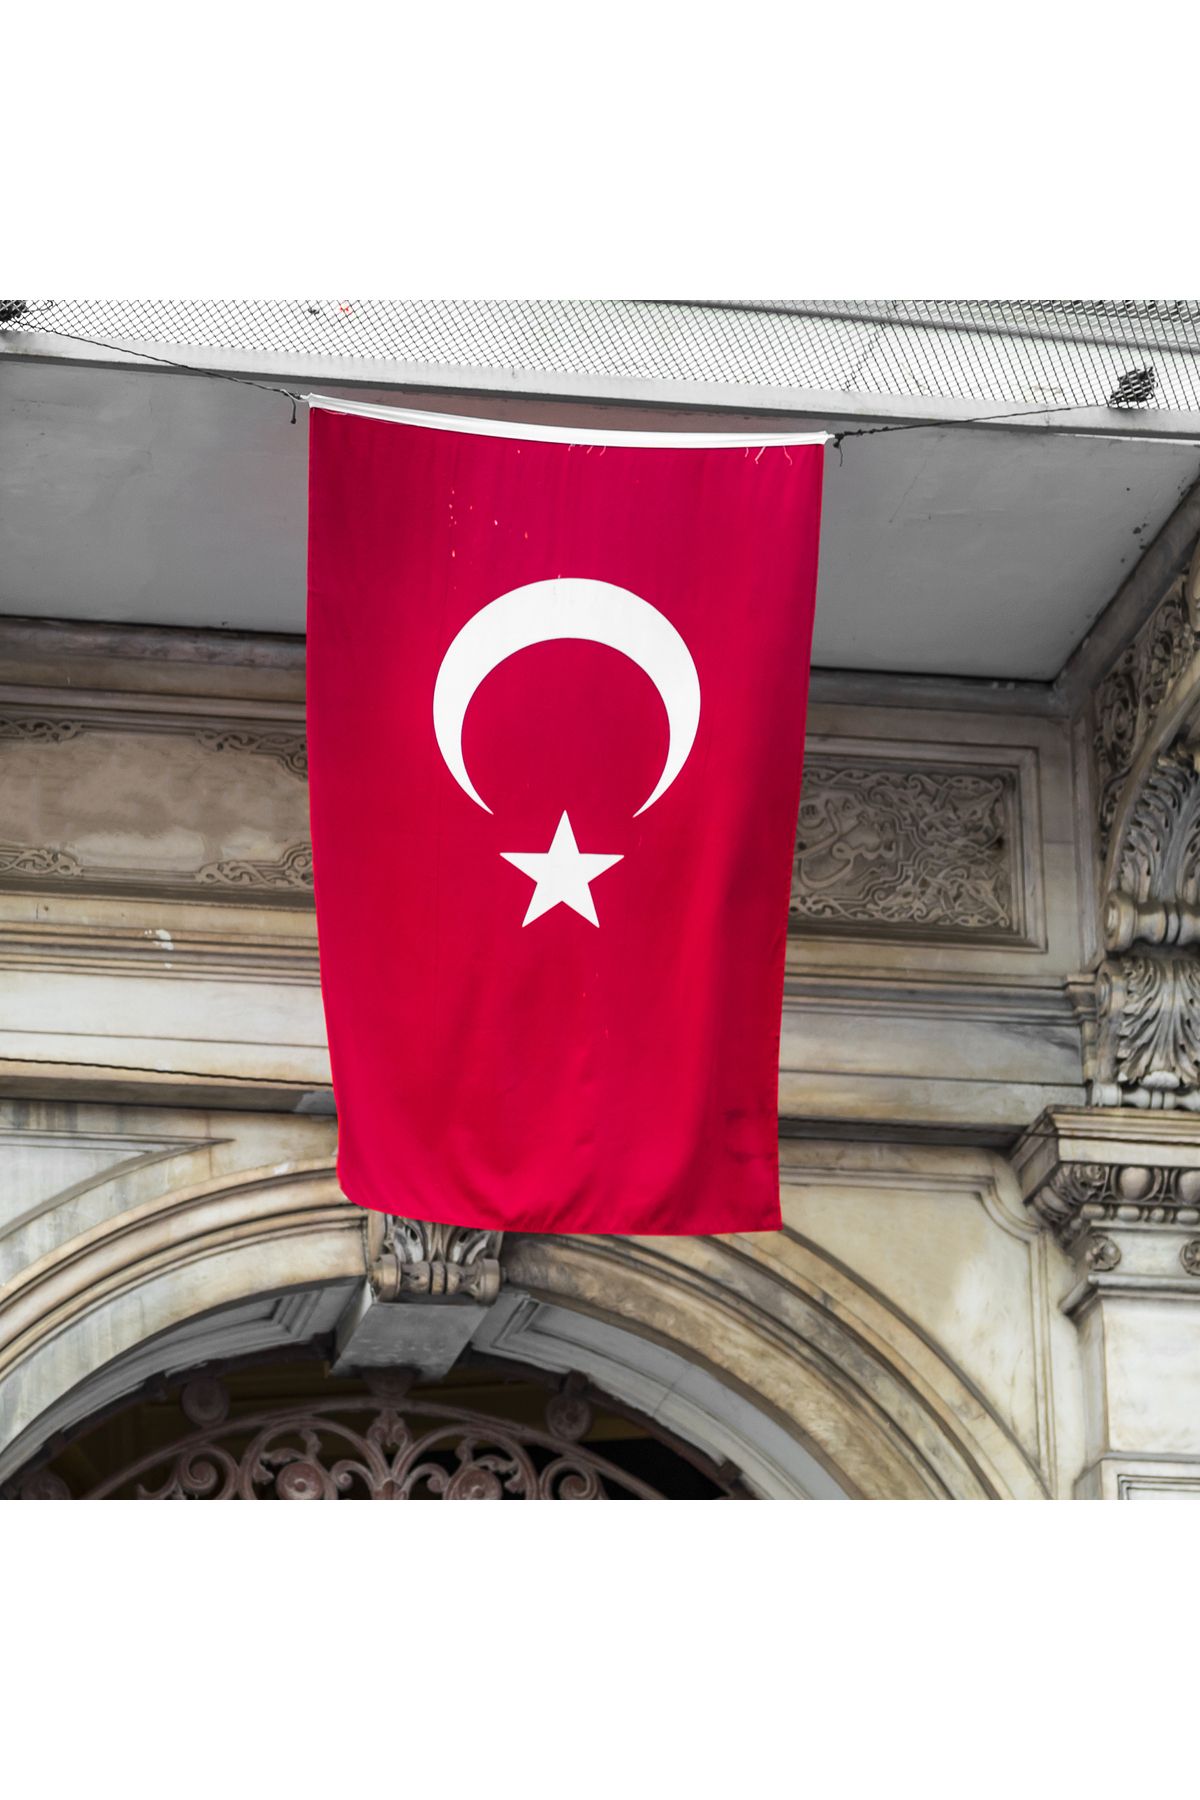 Bayrak  Türk Bayrağı Çeşitleri ve Fiyatları - Trendyol